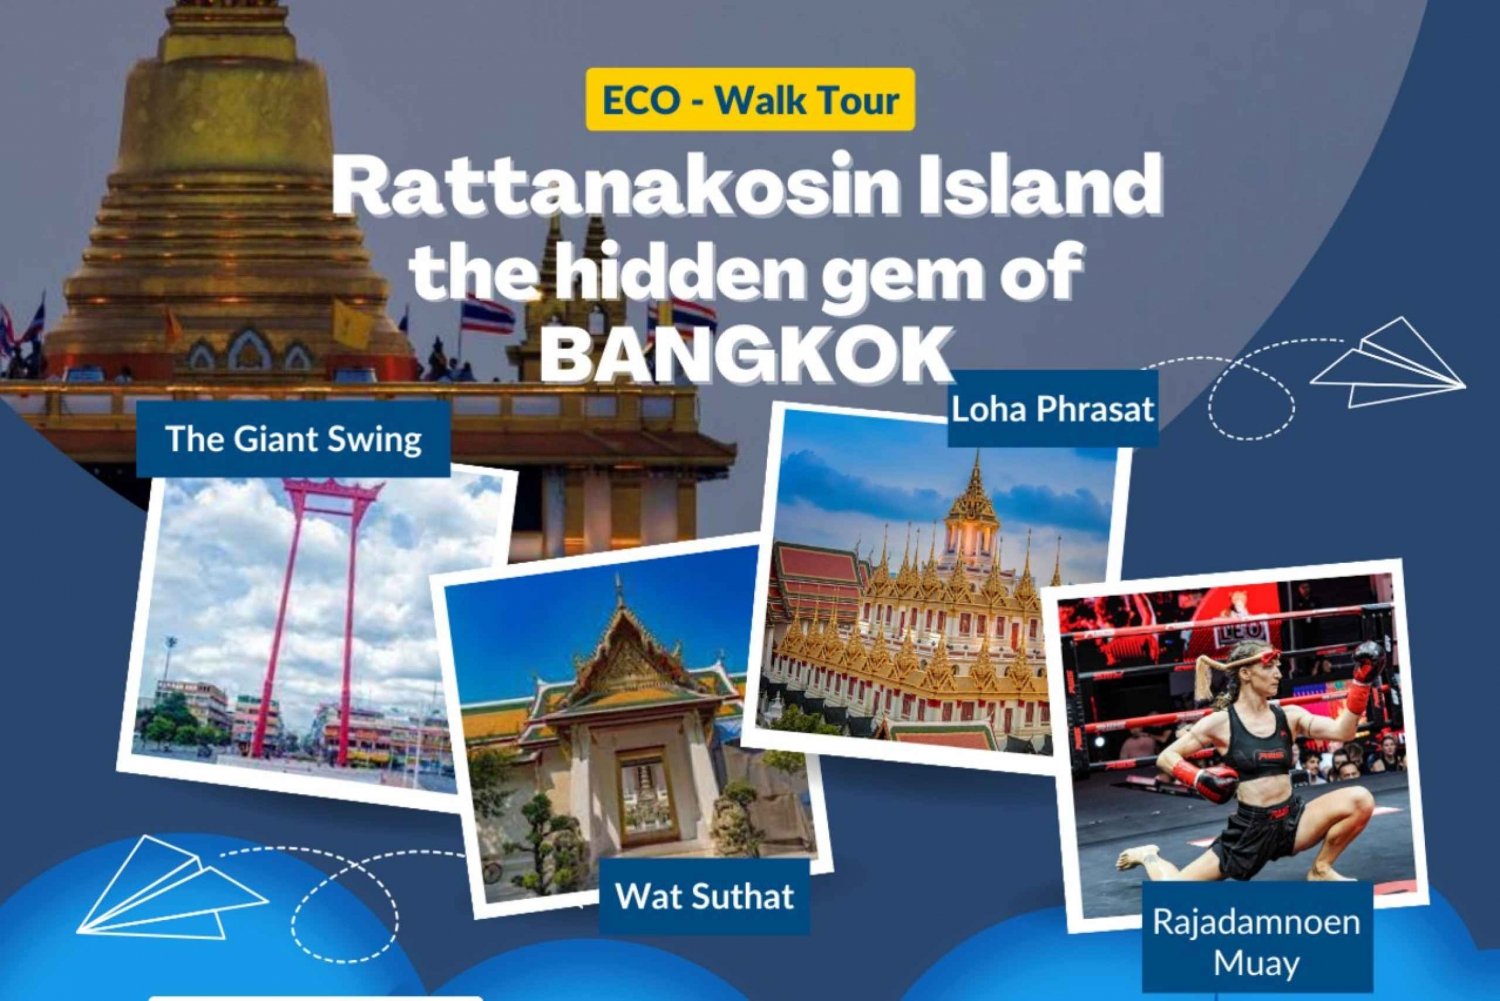 Rattanakosin promenadtur med lokalbefolkning, kultur och Muay Thai